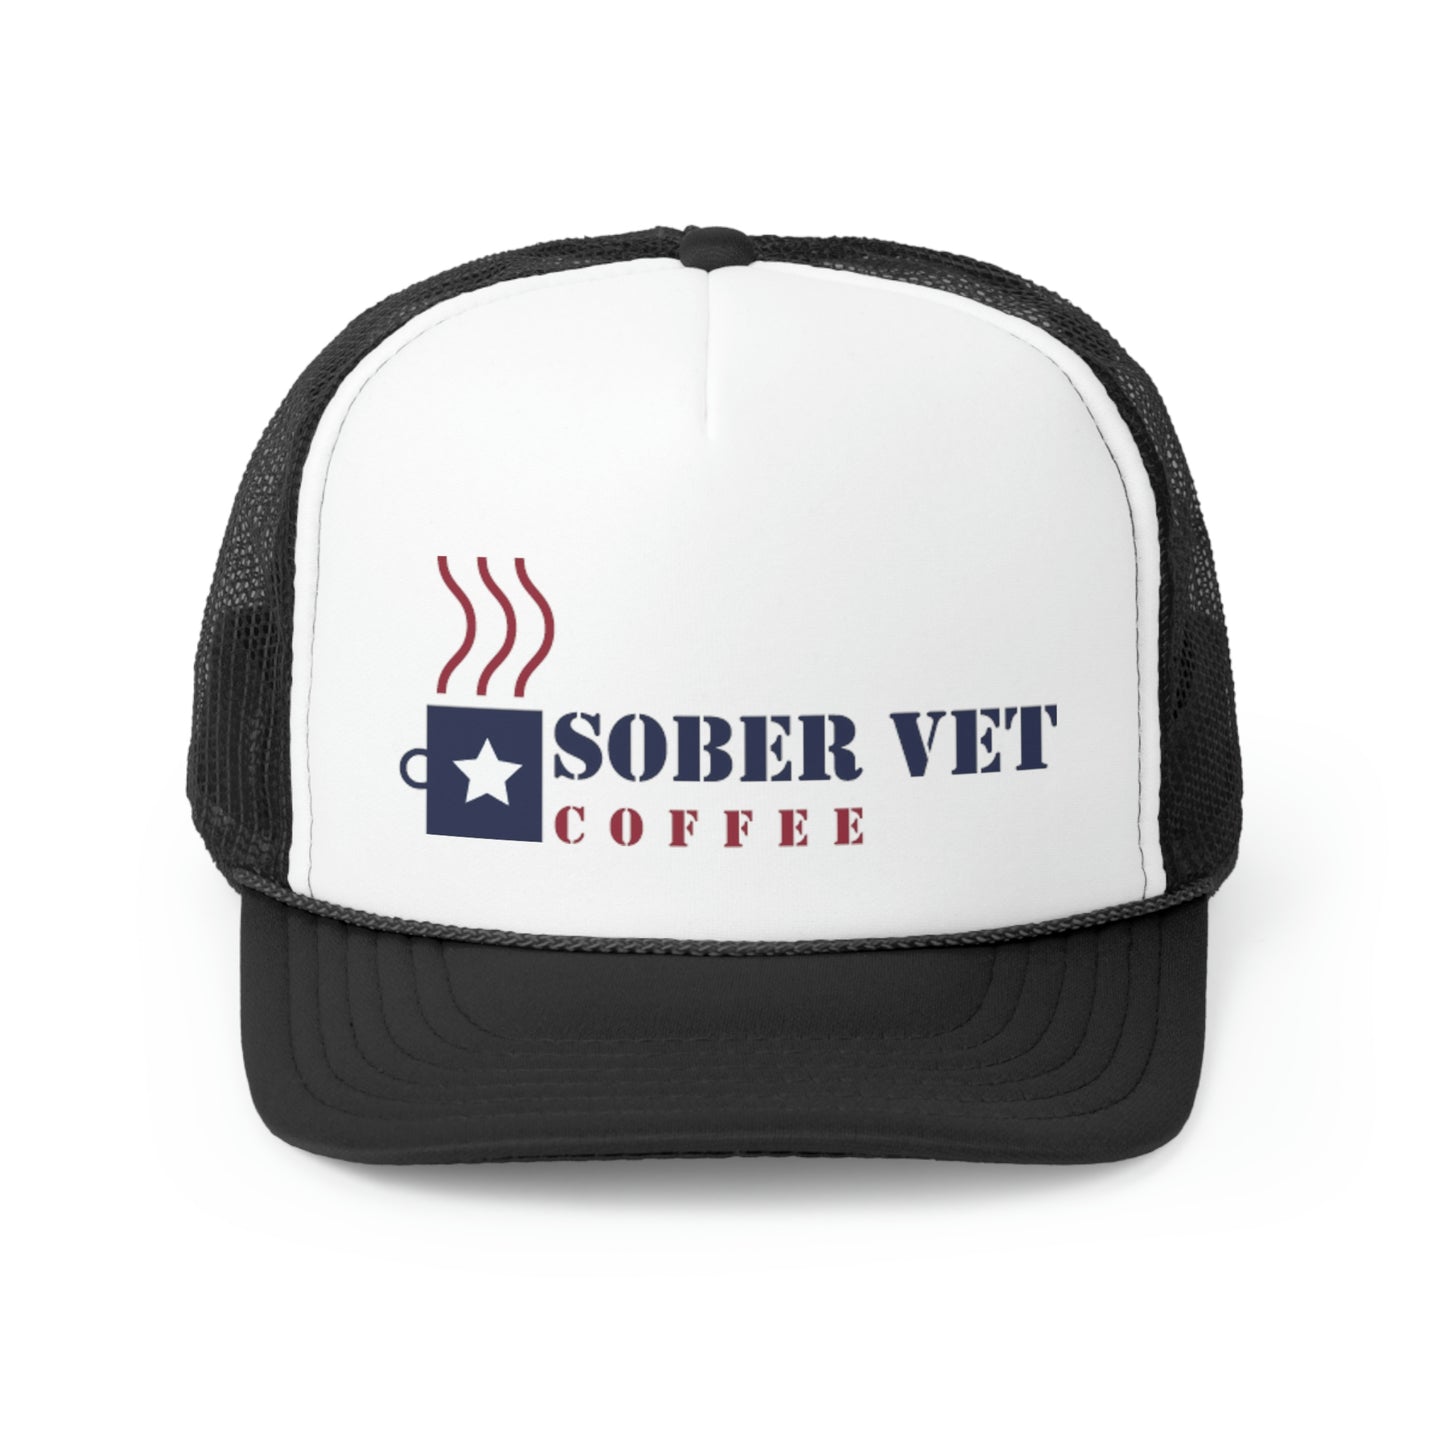 Sober Vet Coffee Trucker Hat